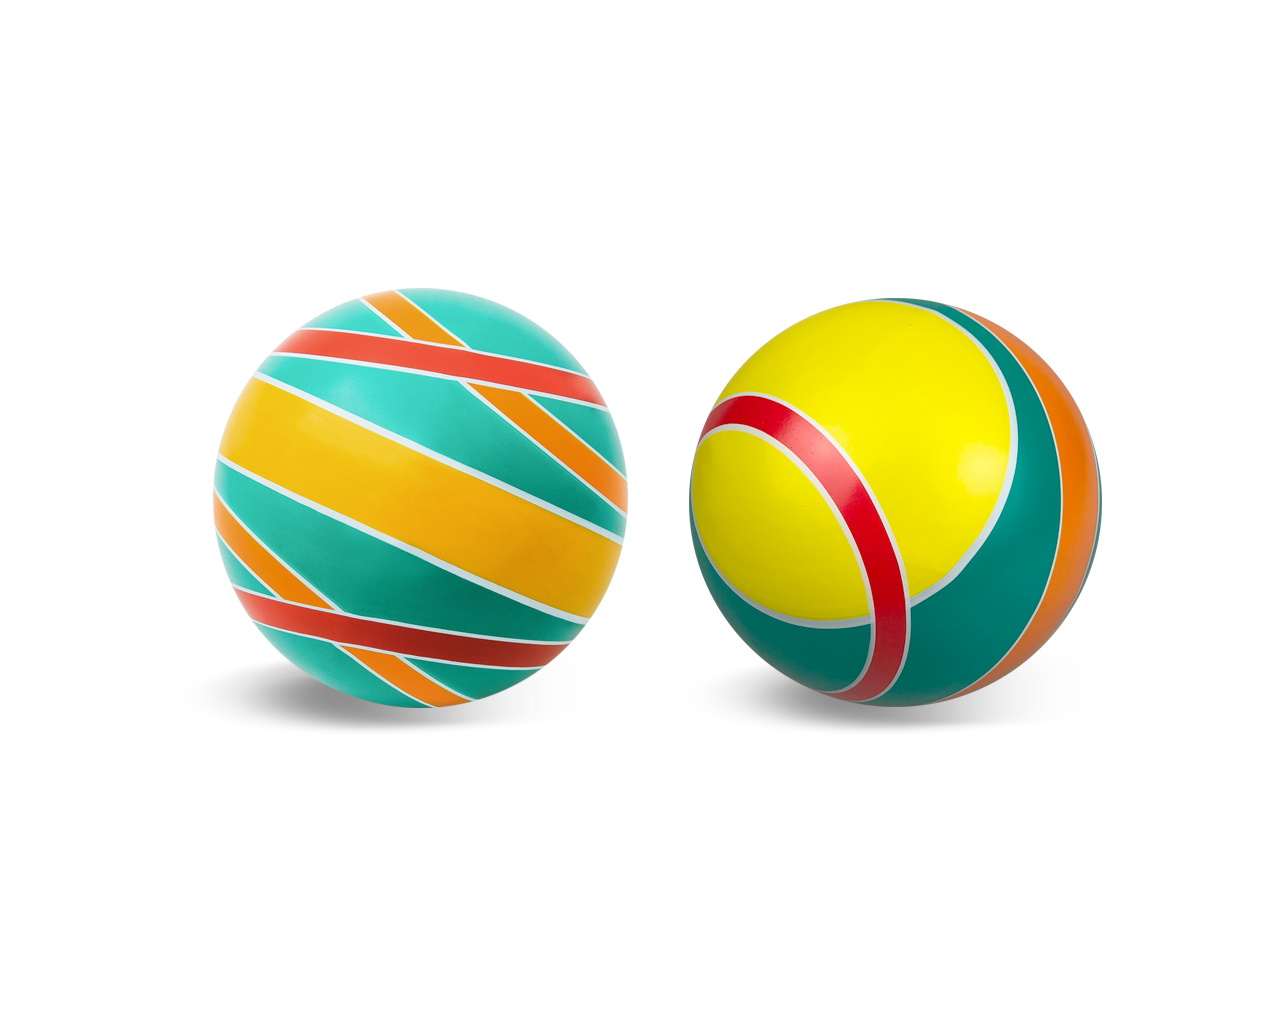 Мяч резиновый диаметр 100 мм. серия Планеты, Чебоксары, Р3-100/Пл 